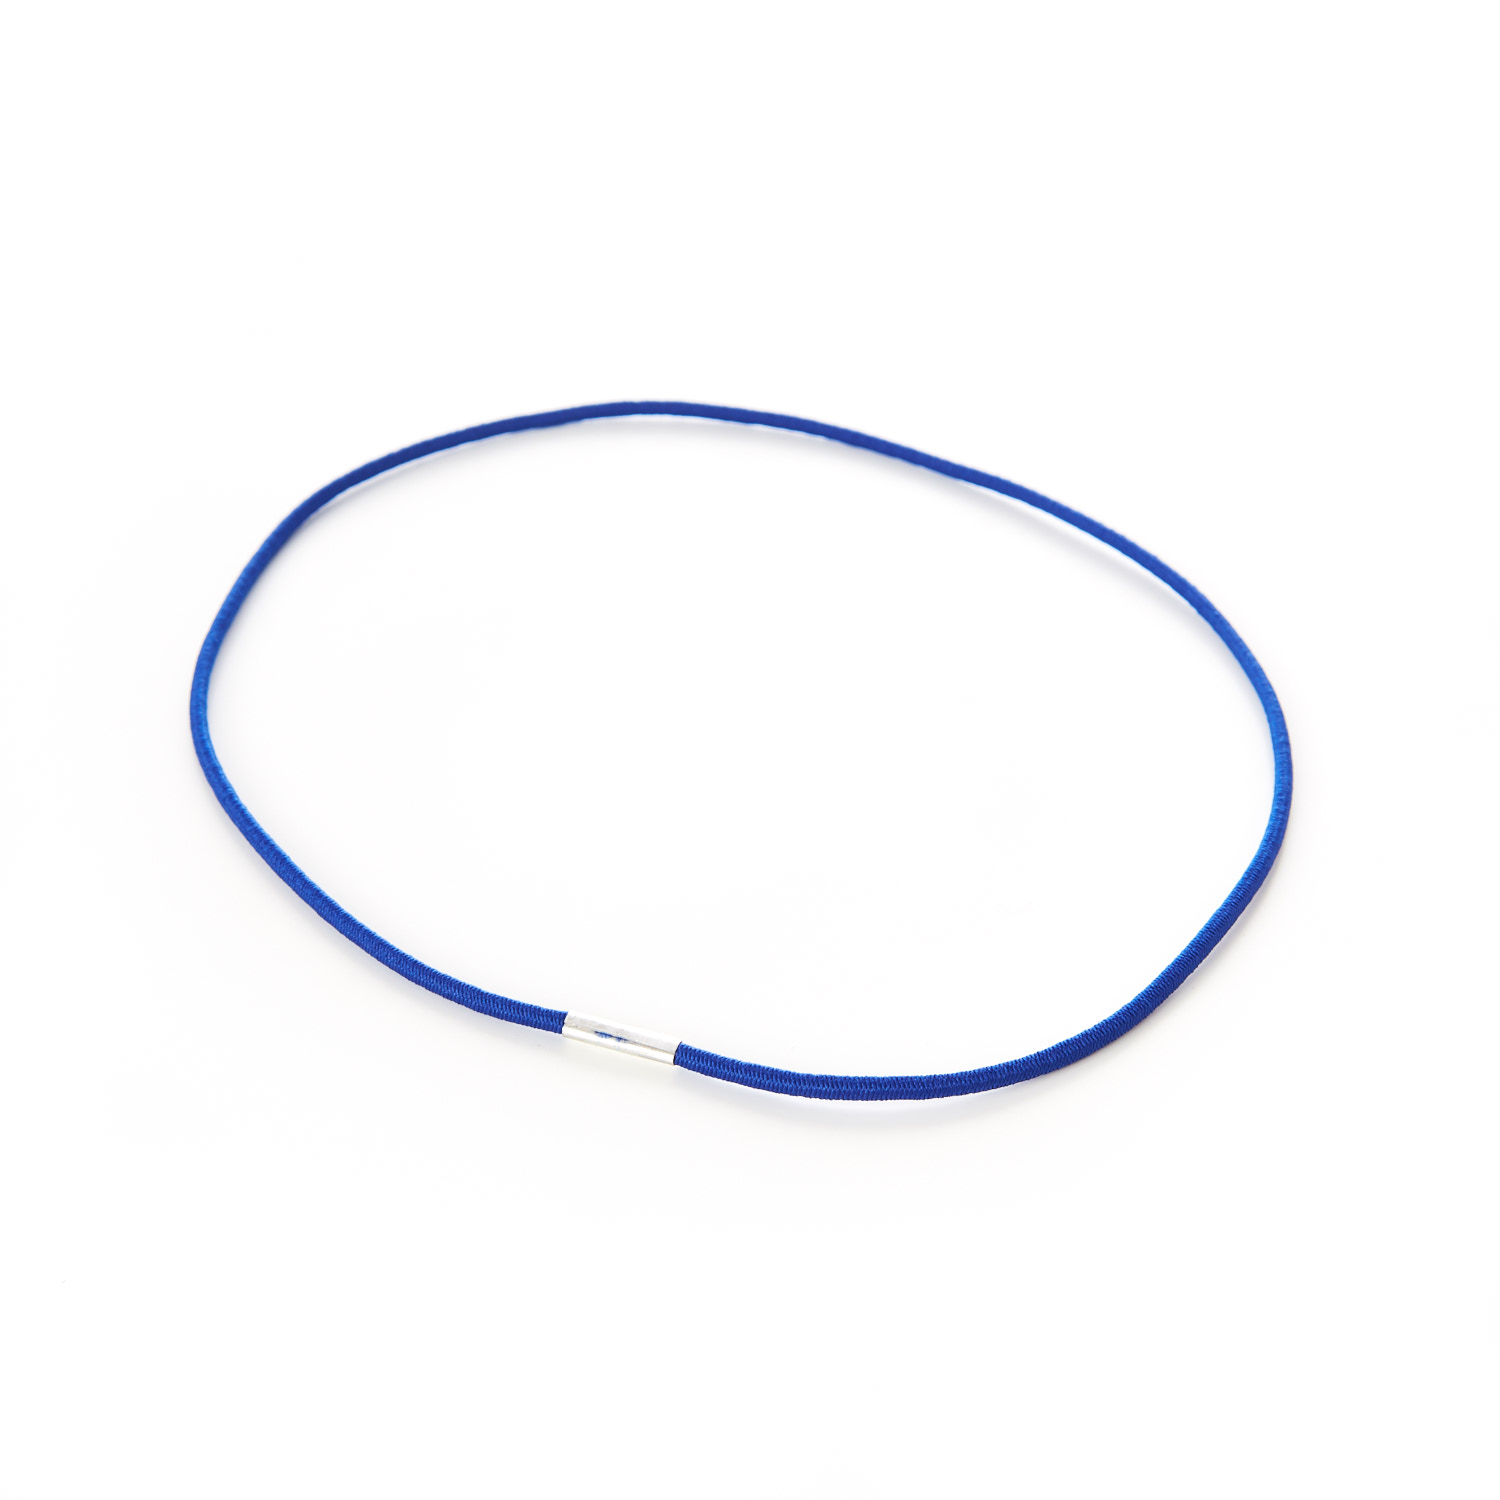 Round Menu Loops Blue Metal Tag Clamped Thin Elastic